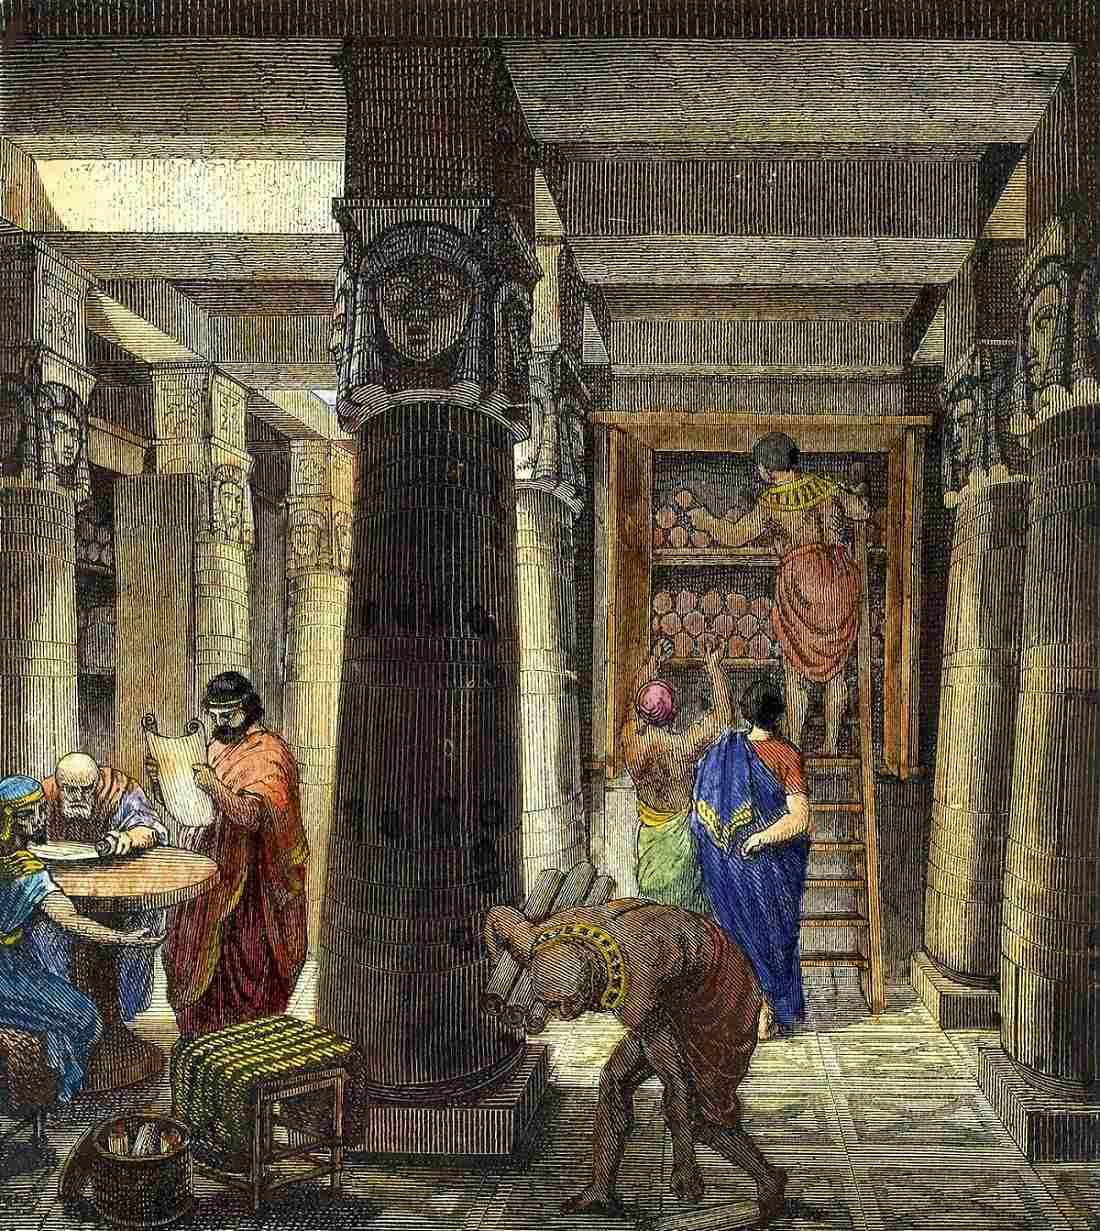 Ashurbanipal könyvtára: A legrégebbi ismert könyvtár, amely ihlette az Alexandriai Könyvtárat 2